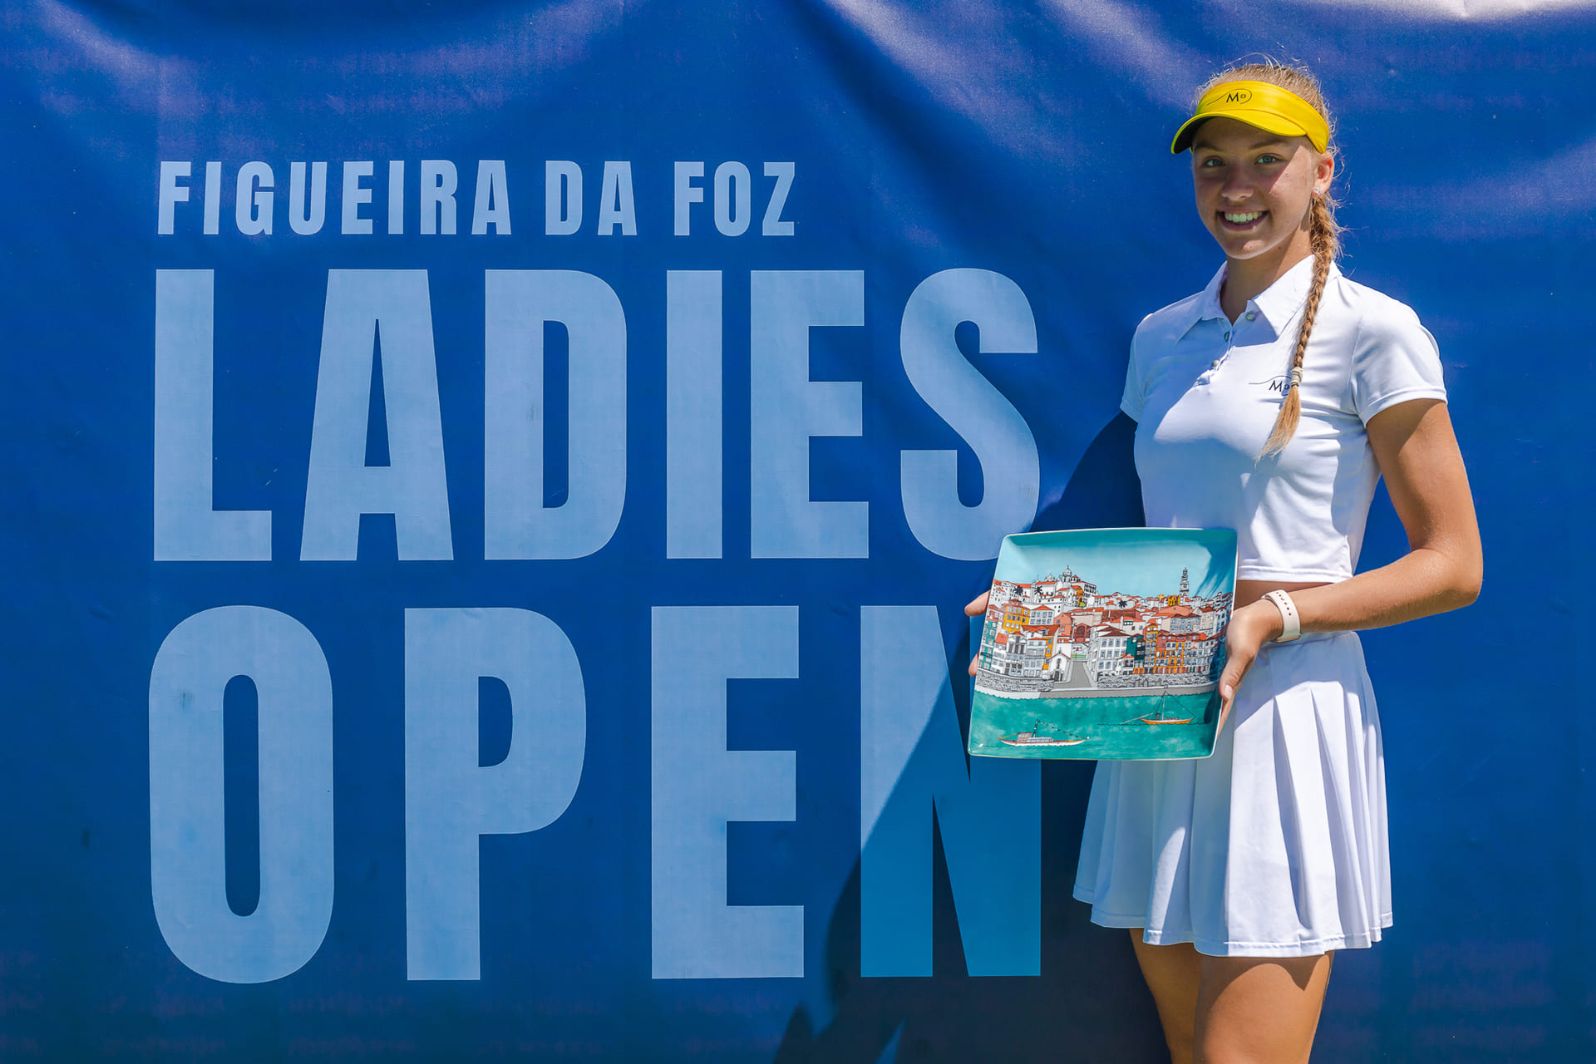 Alina Korneeva vence o Figueira da Foz Ladies Open mais importante de sempre